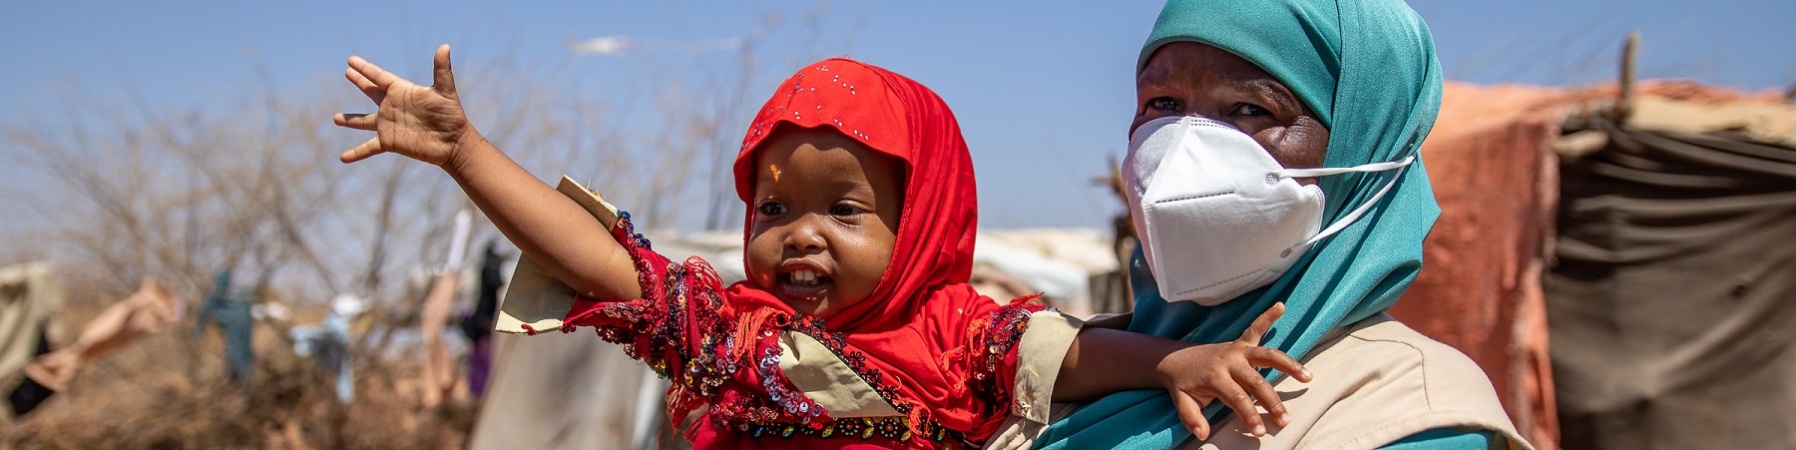 Bambina della Somalia vestita di rosso è in braccio a una operatrice save the children e ha il braccio alzato verso l alto